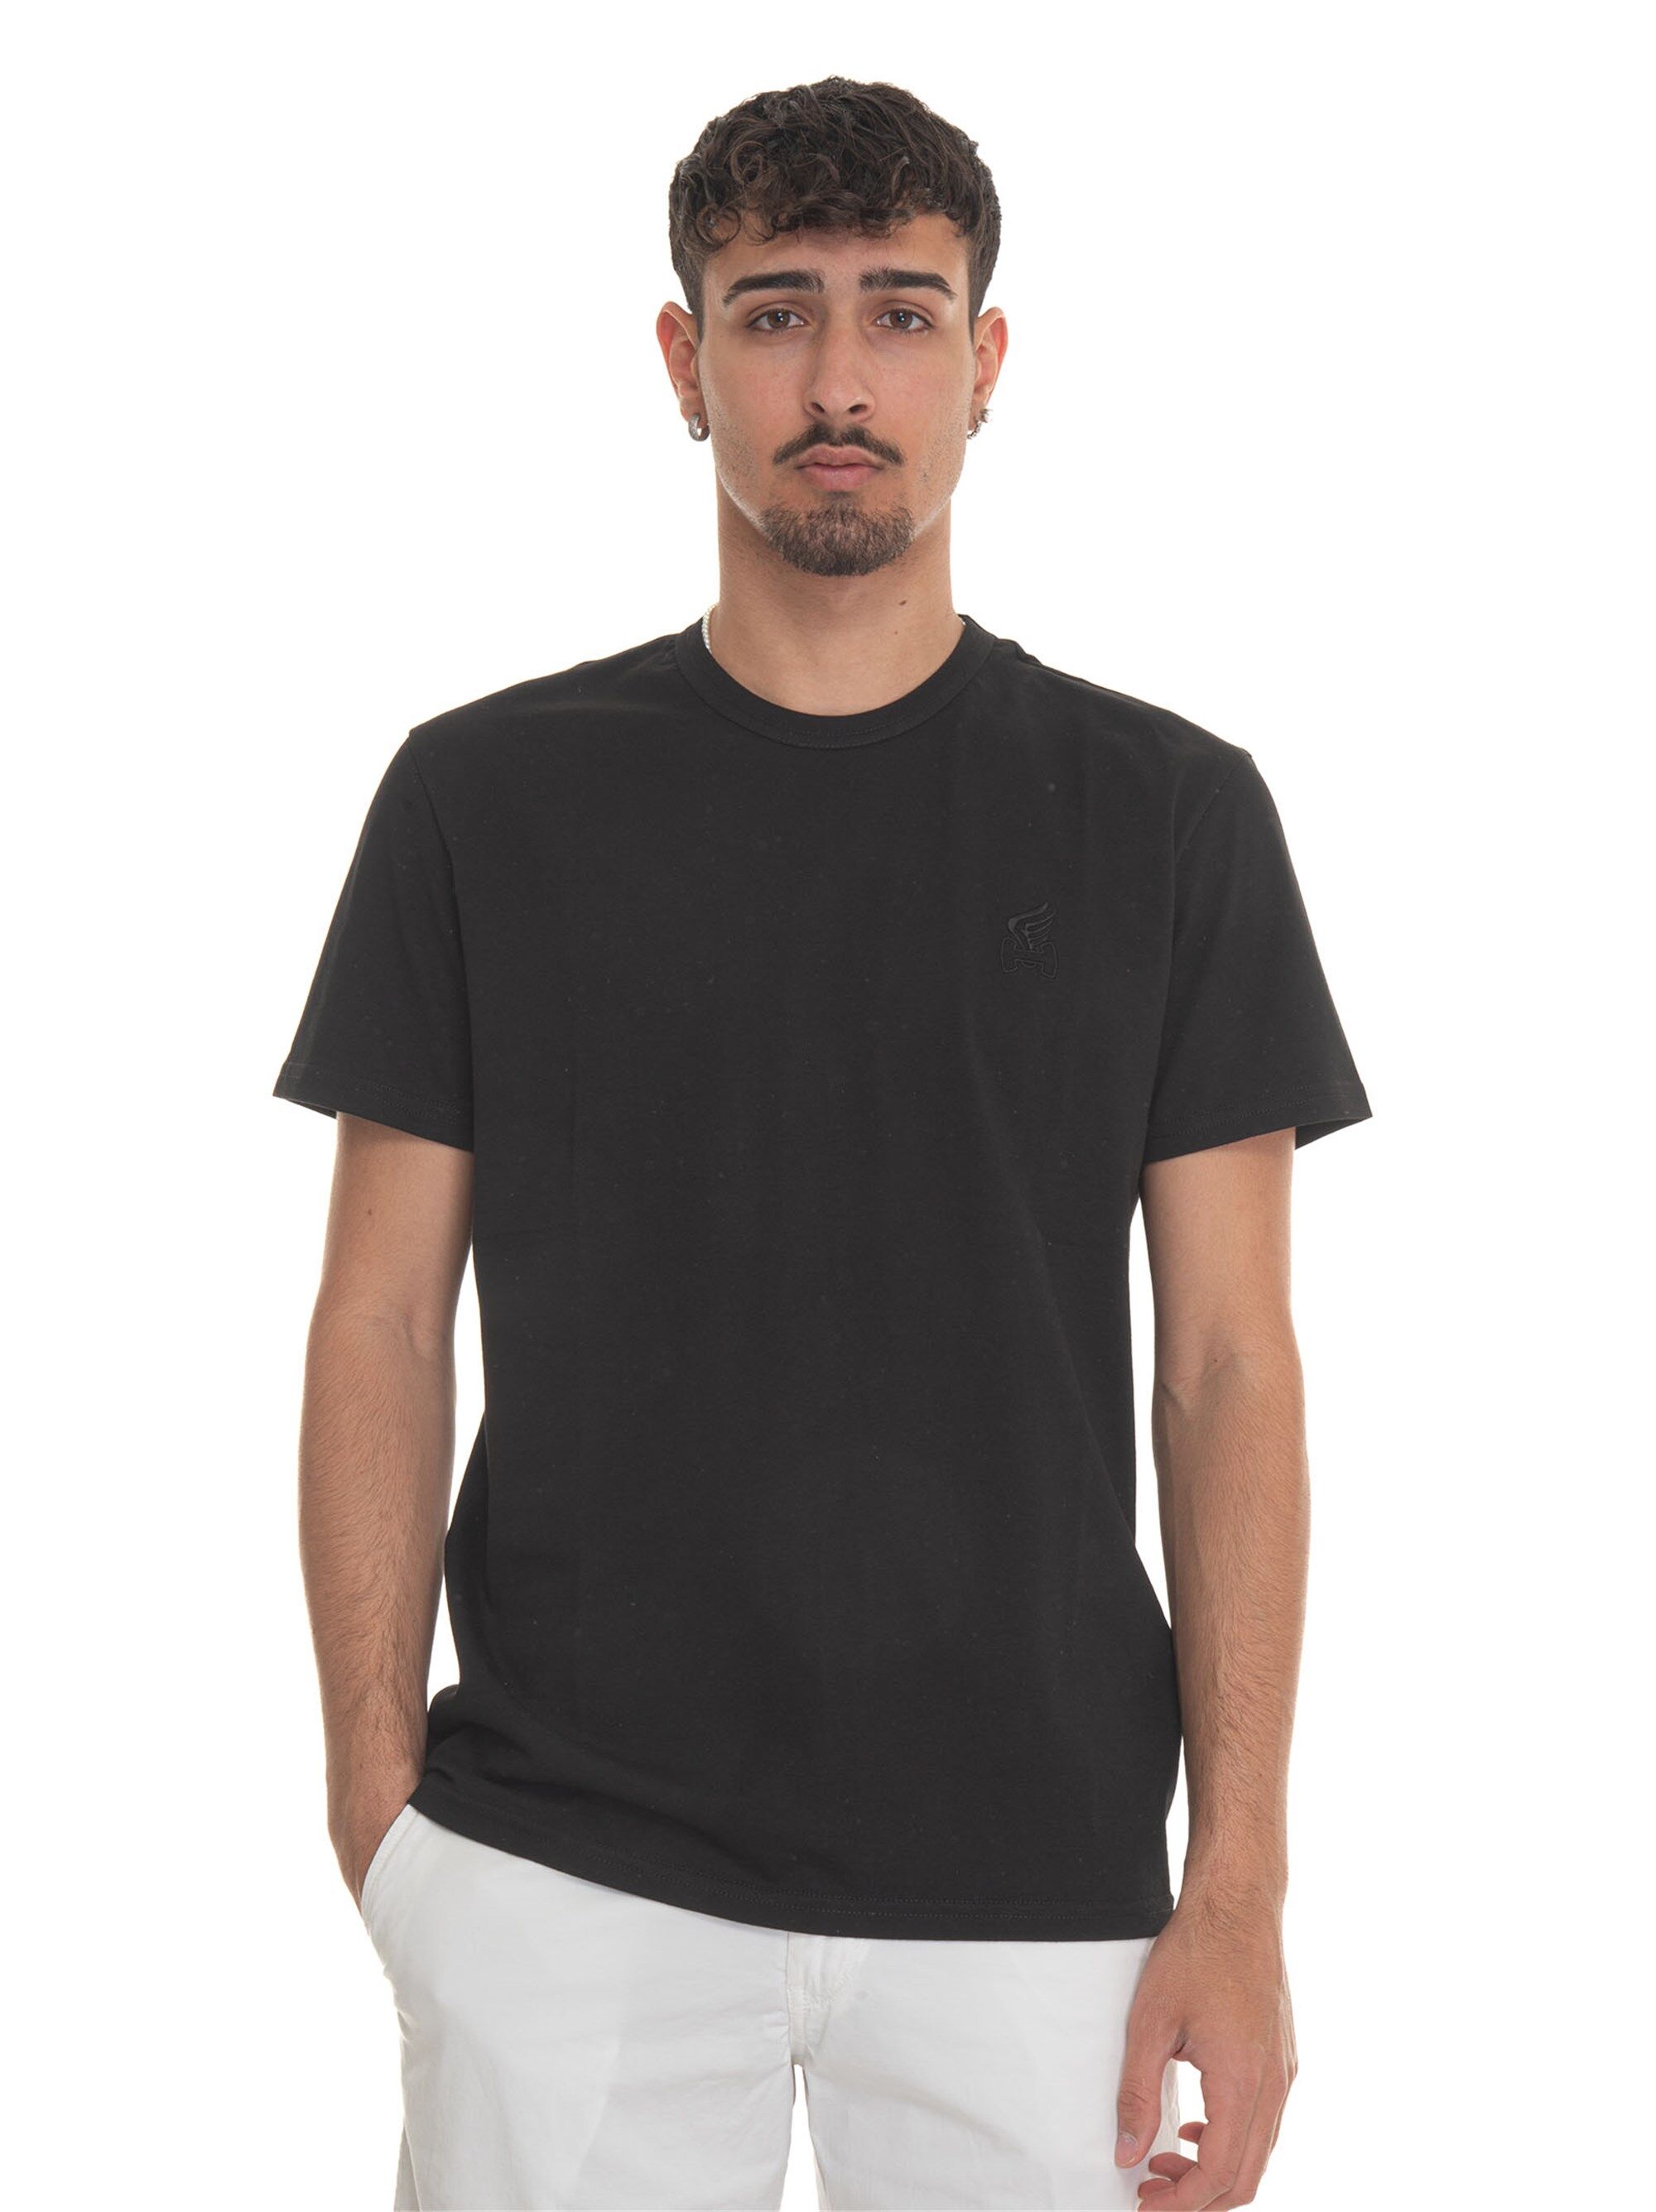 Hogan T-shirt girocollo mezza manica Nero Uomo XXL